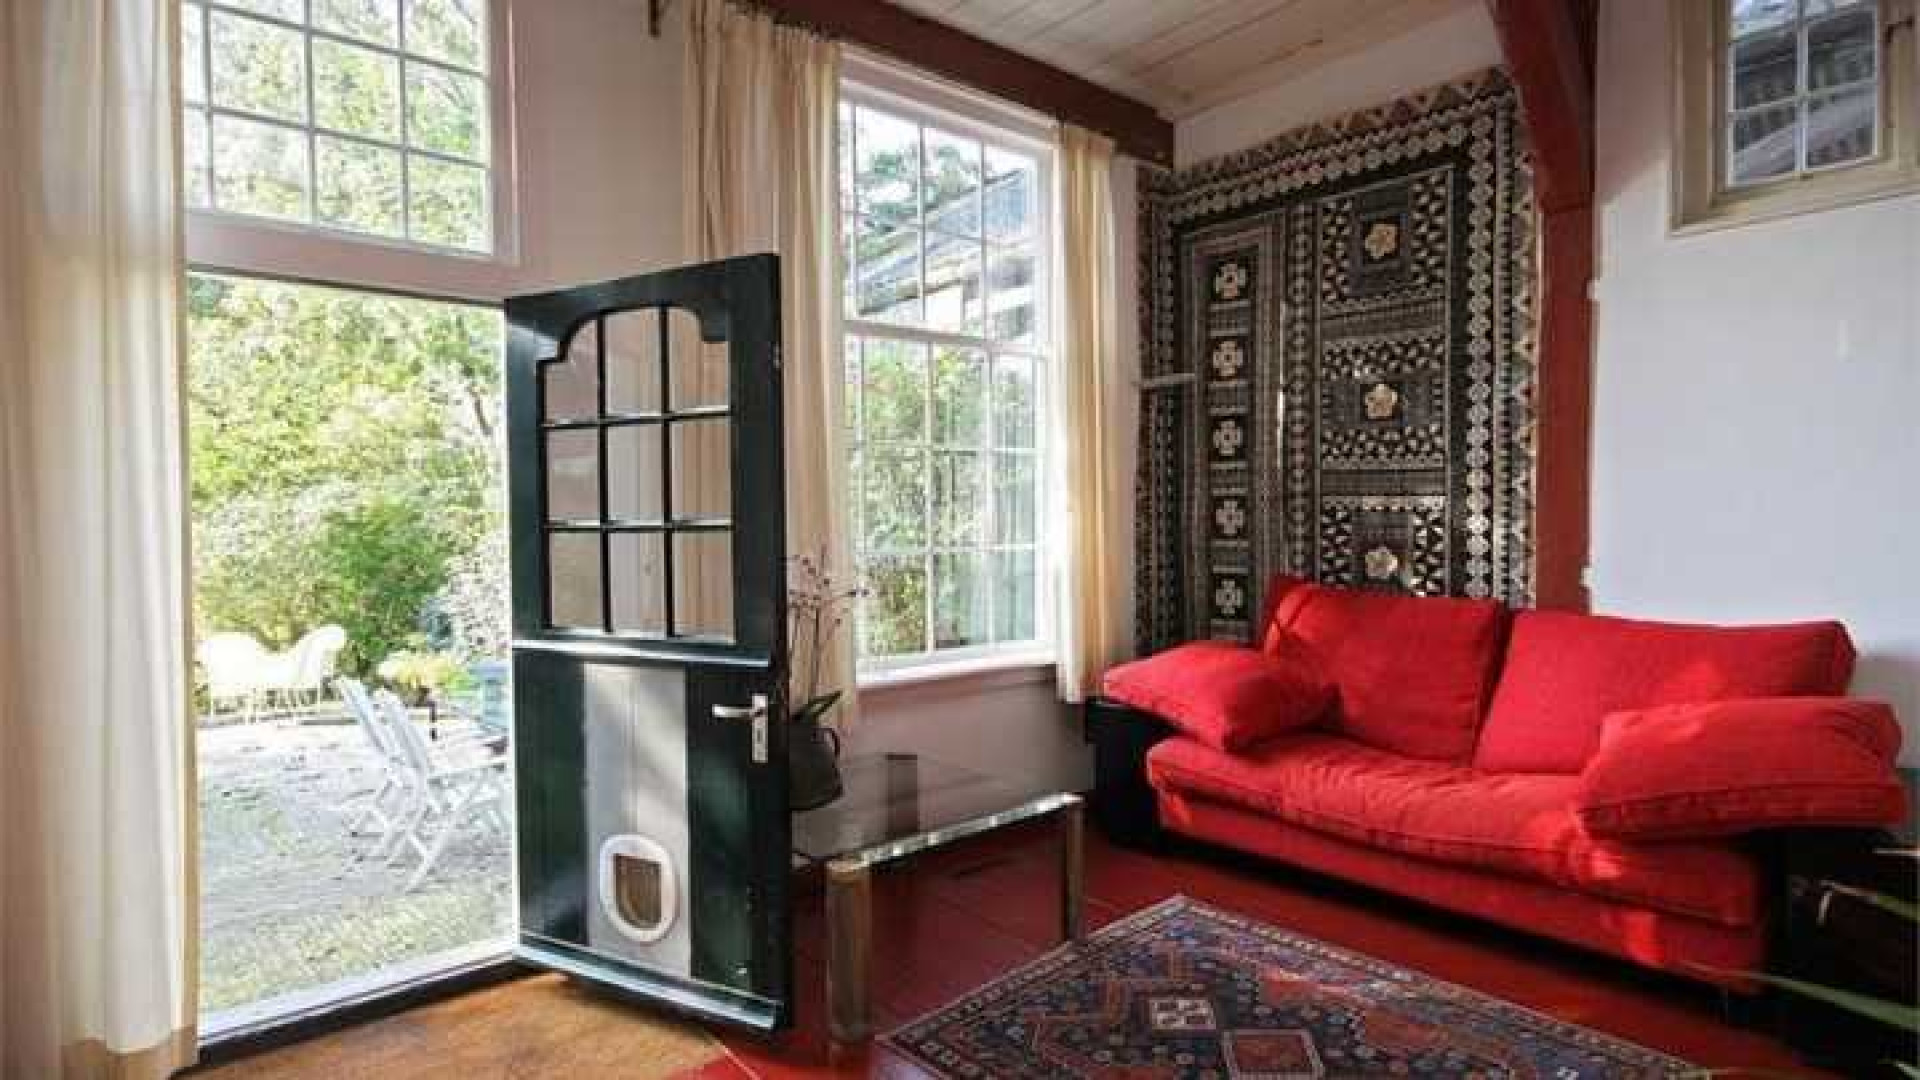 Wilbert Gieske verruilt Amsterdam voor prachtig huurhuis in Broek in Waterland. Zie foto's 4